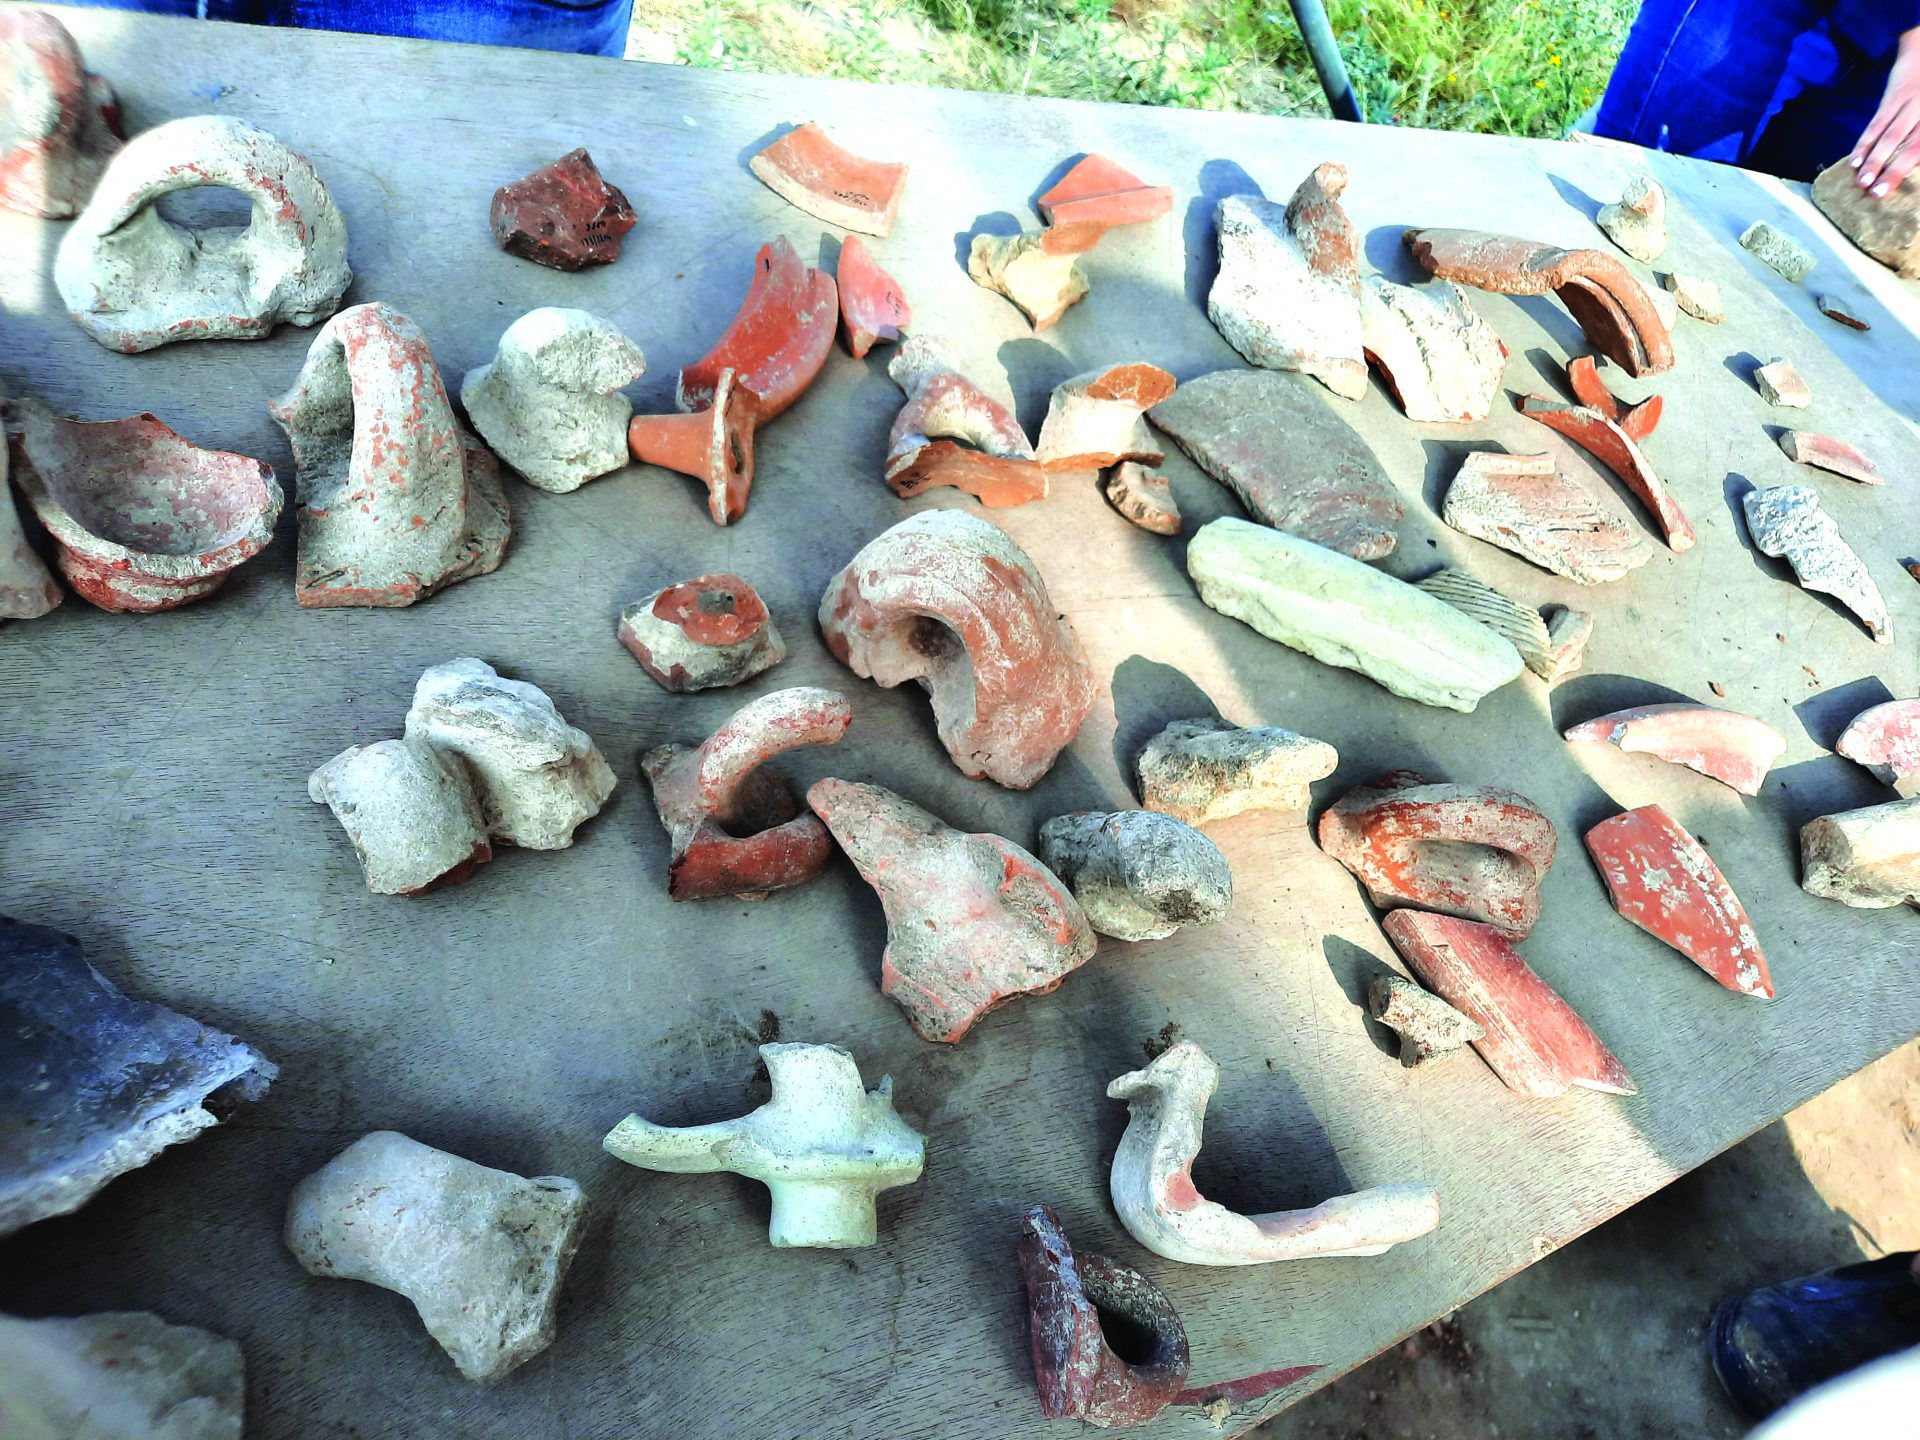 שברי כלי חרס שנמצאו בחפירות ניר ישראל. צילום עדינה בר אל